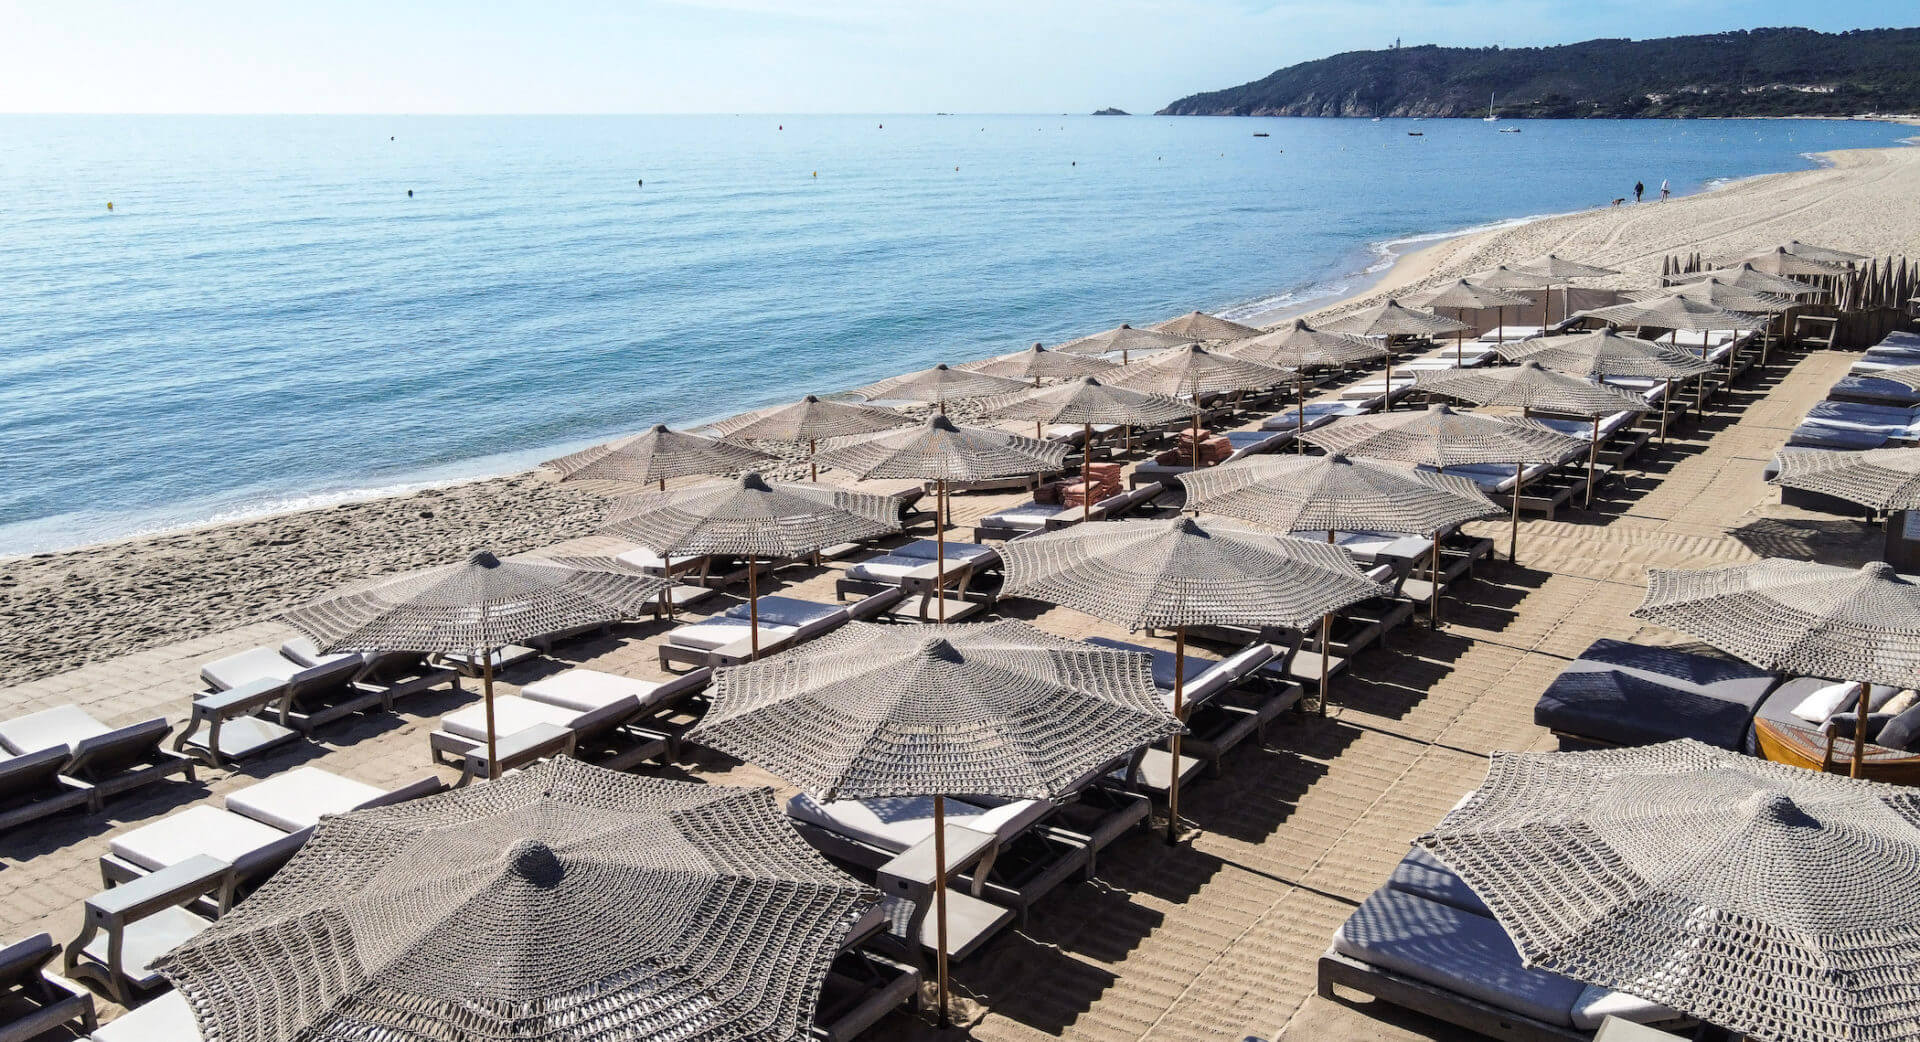 Our Global Editor Debbie Stone reviews the magnificent Hôtel Byblos St Tropez 